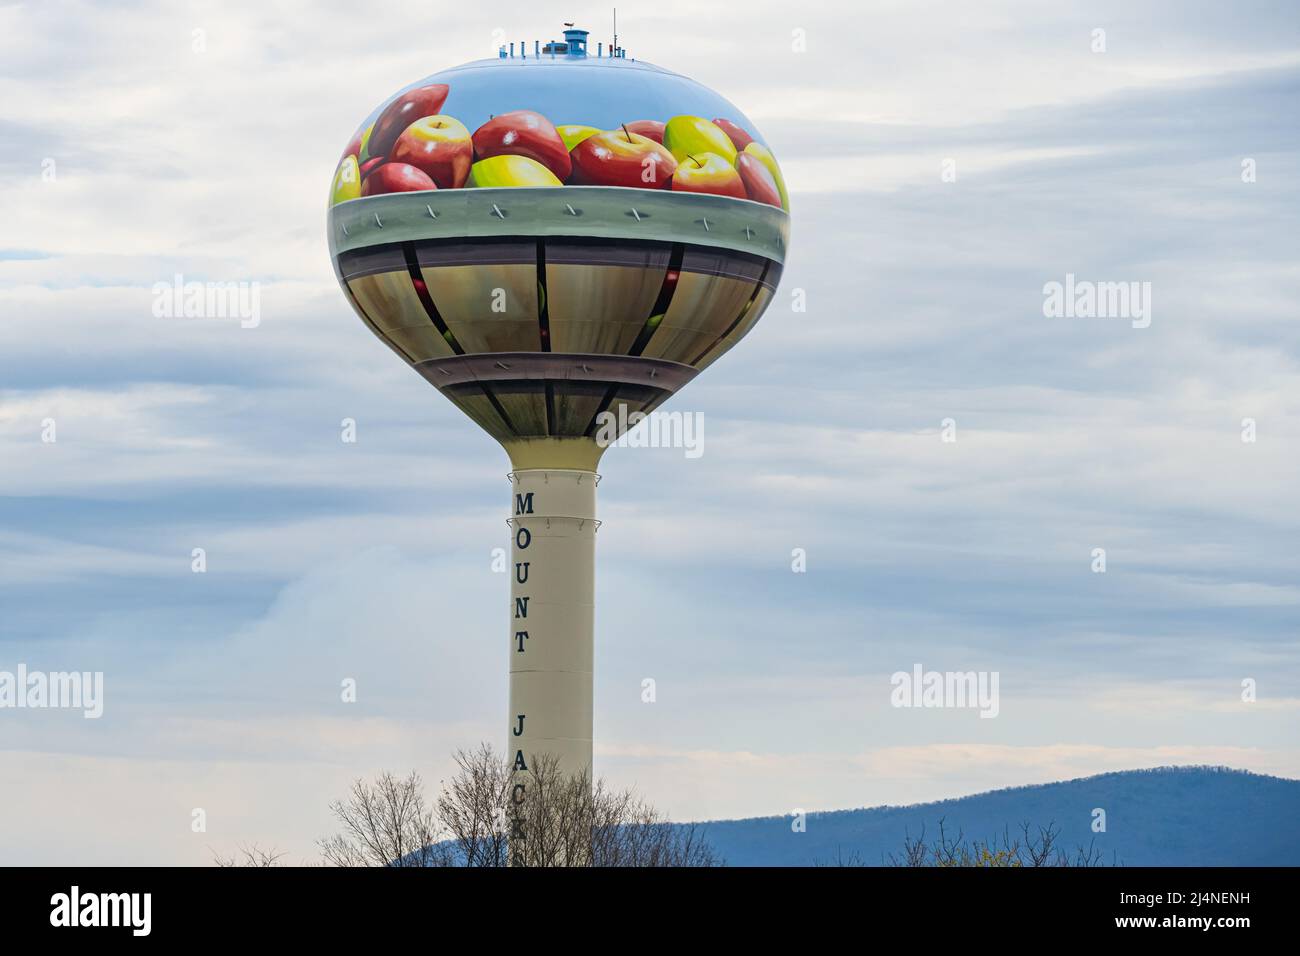 Mount Jackson, der Wasserturm mit Apfelkörben in Virginia, ist ein Wahrzeichen an der I-81 im Shenandoah Valley in Virginia. (USA) Stockfoto